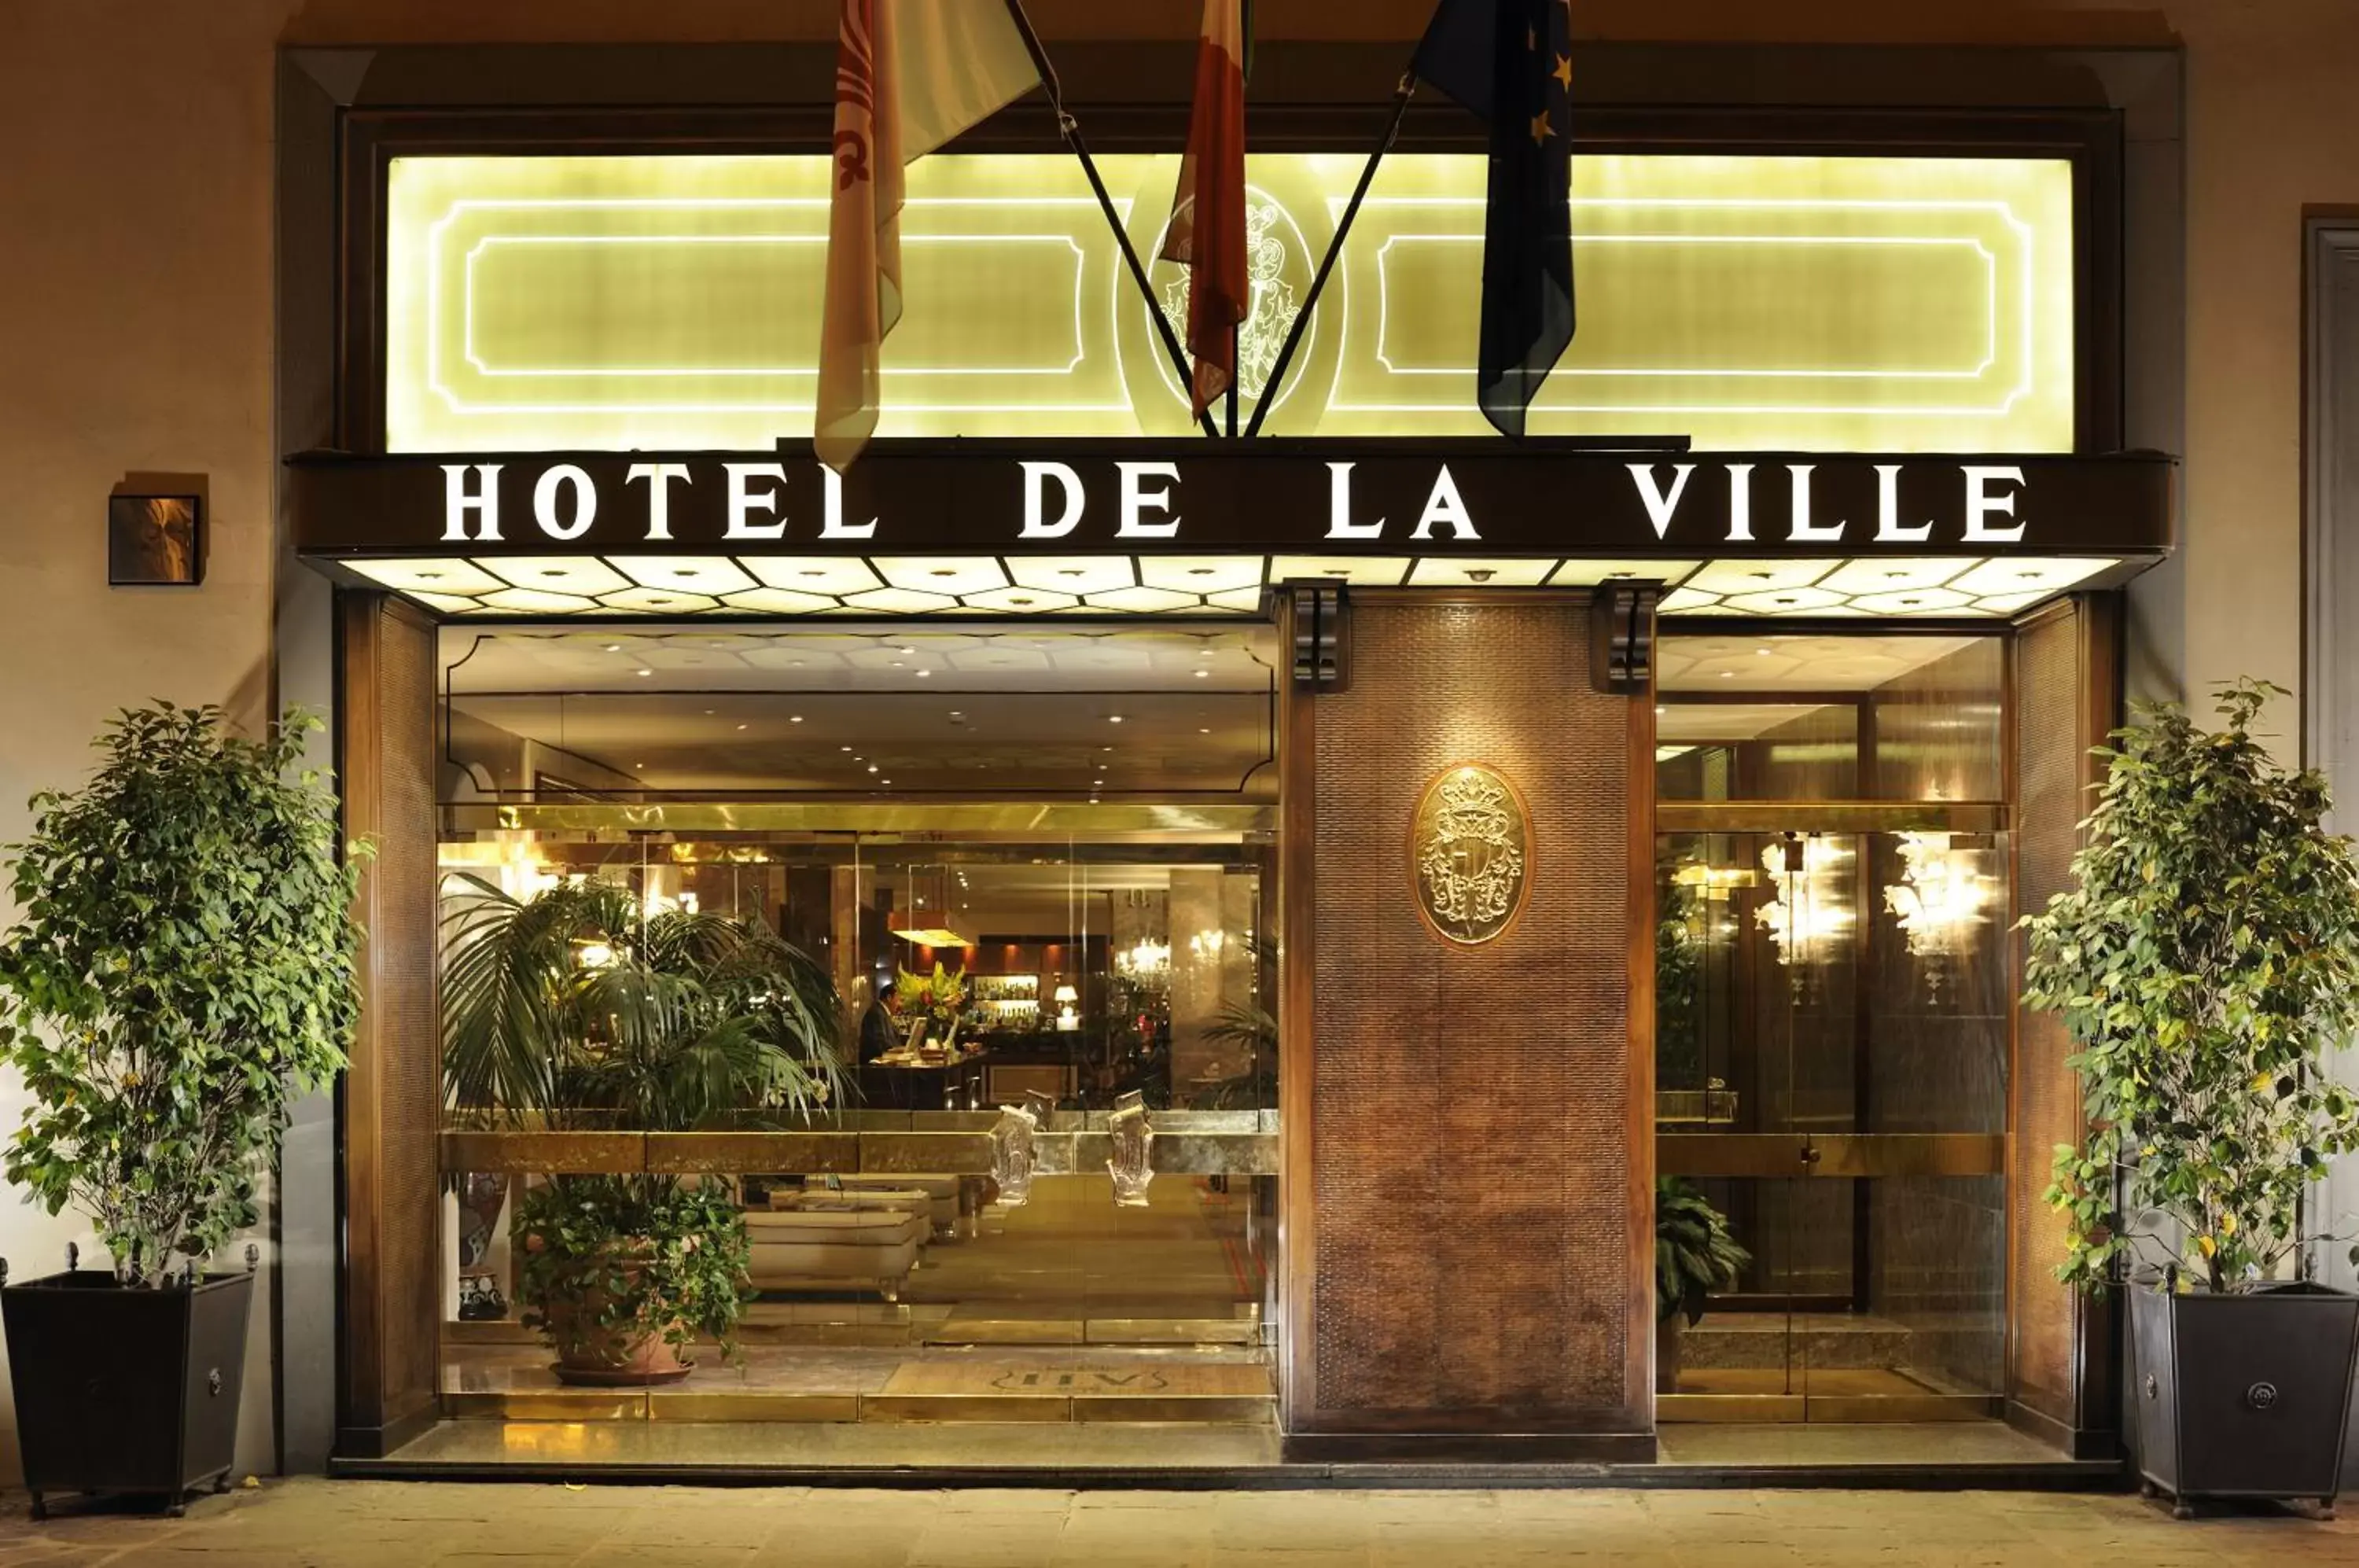 Facade/entrance in Hotel De La Ville